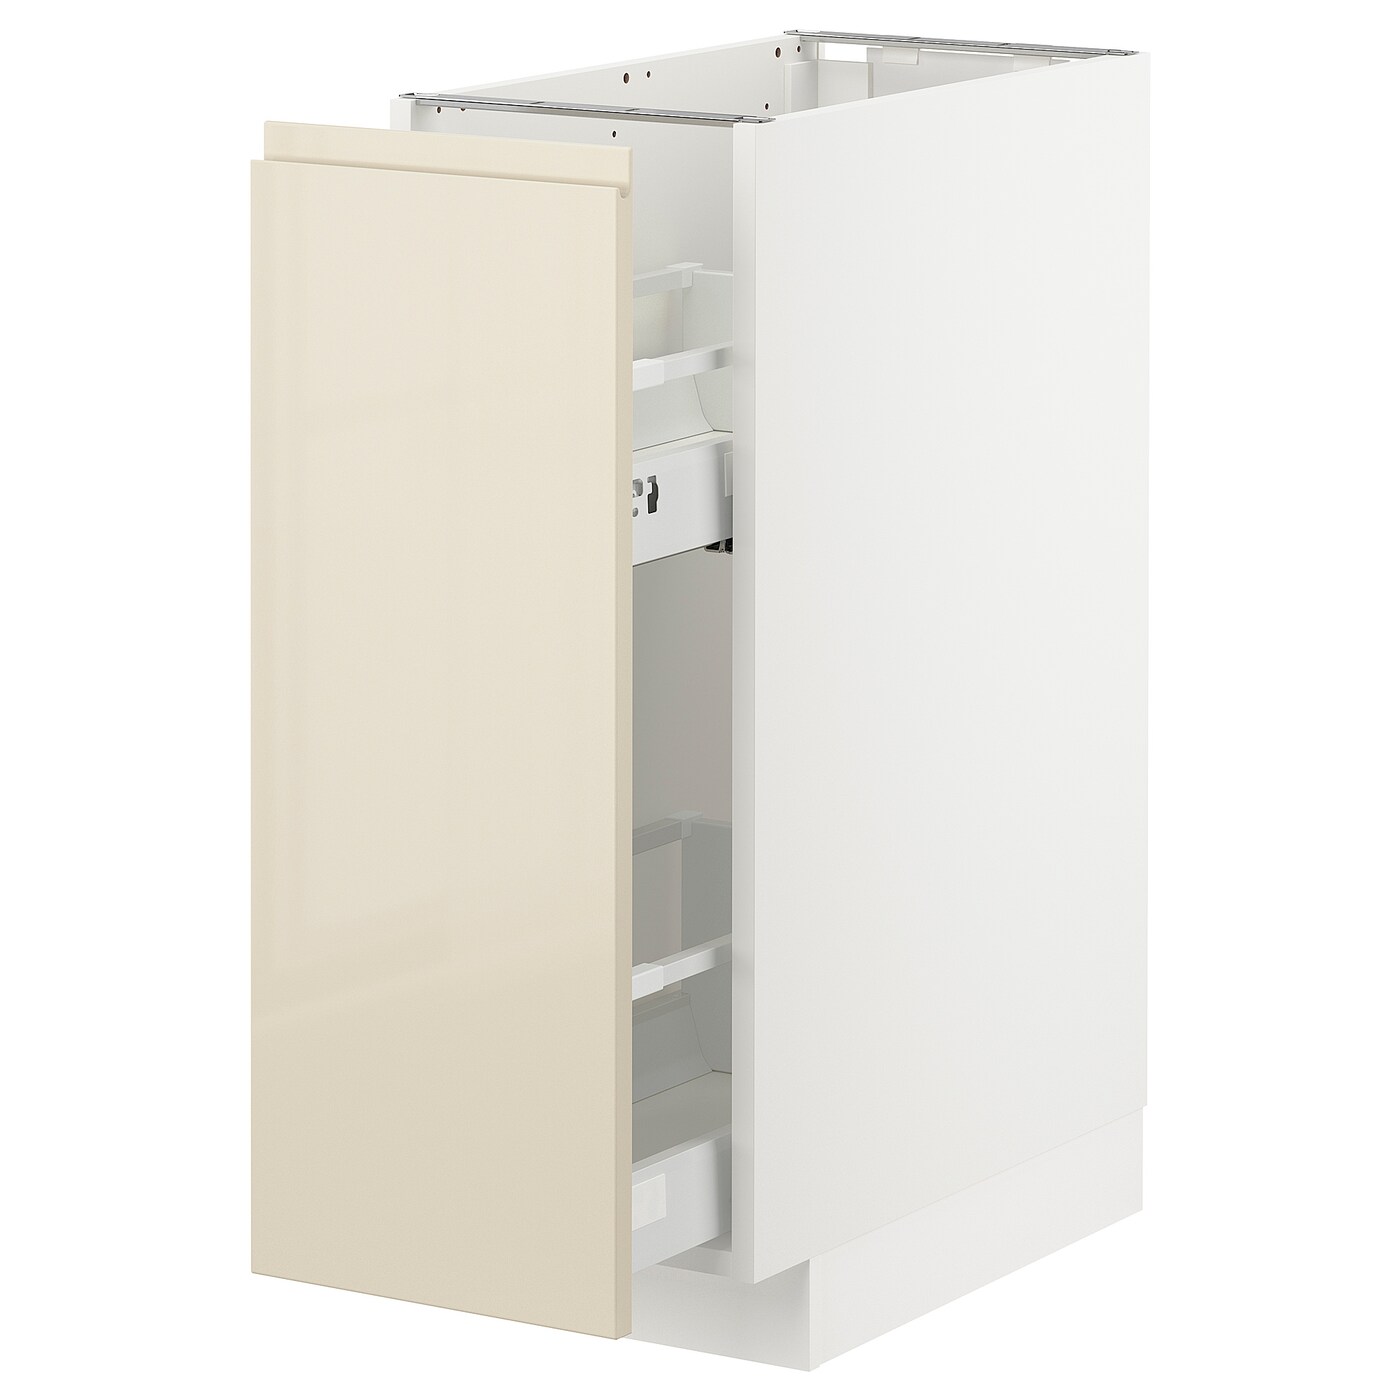 Напольный шкаф - IKEA METOD, 88x62x30см, белый/светло-бежевый, МЕТОД ИКЕА